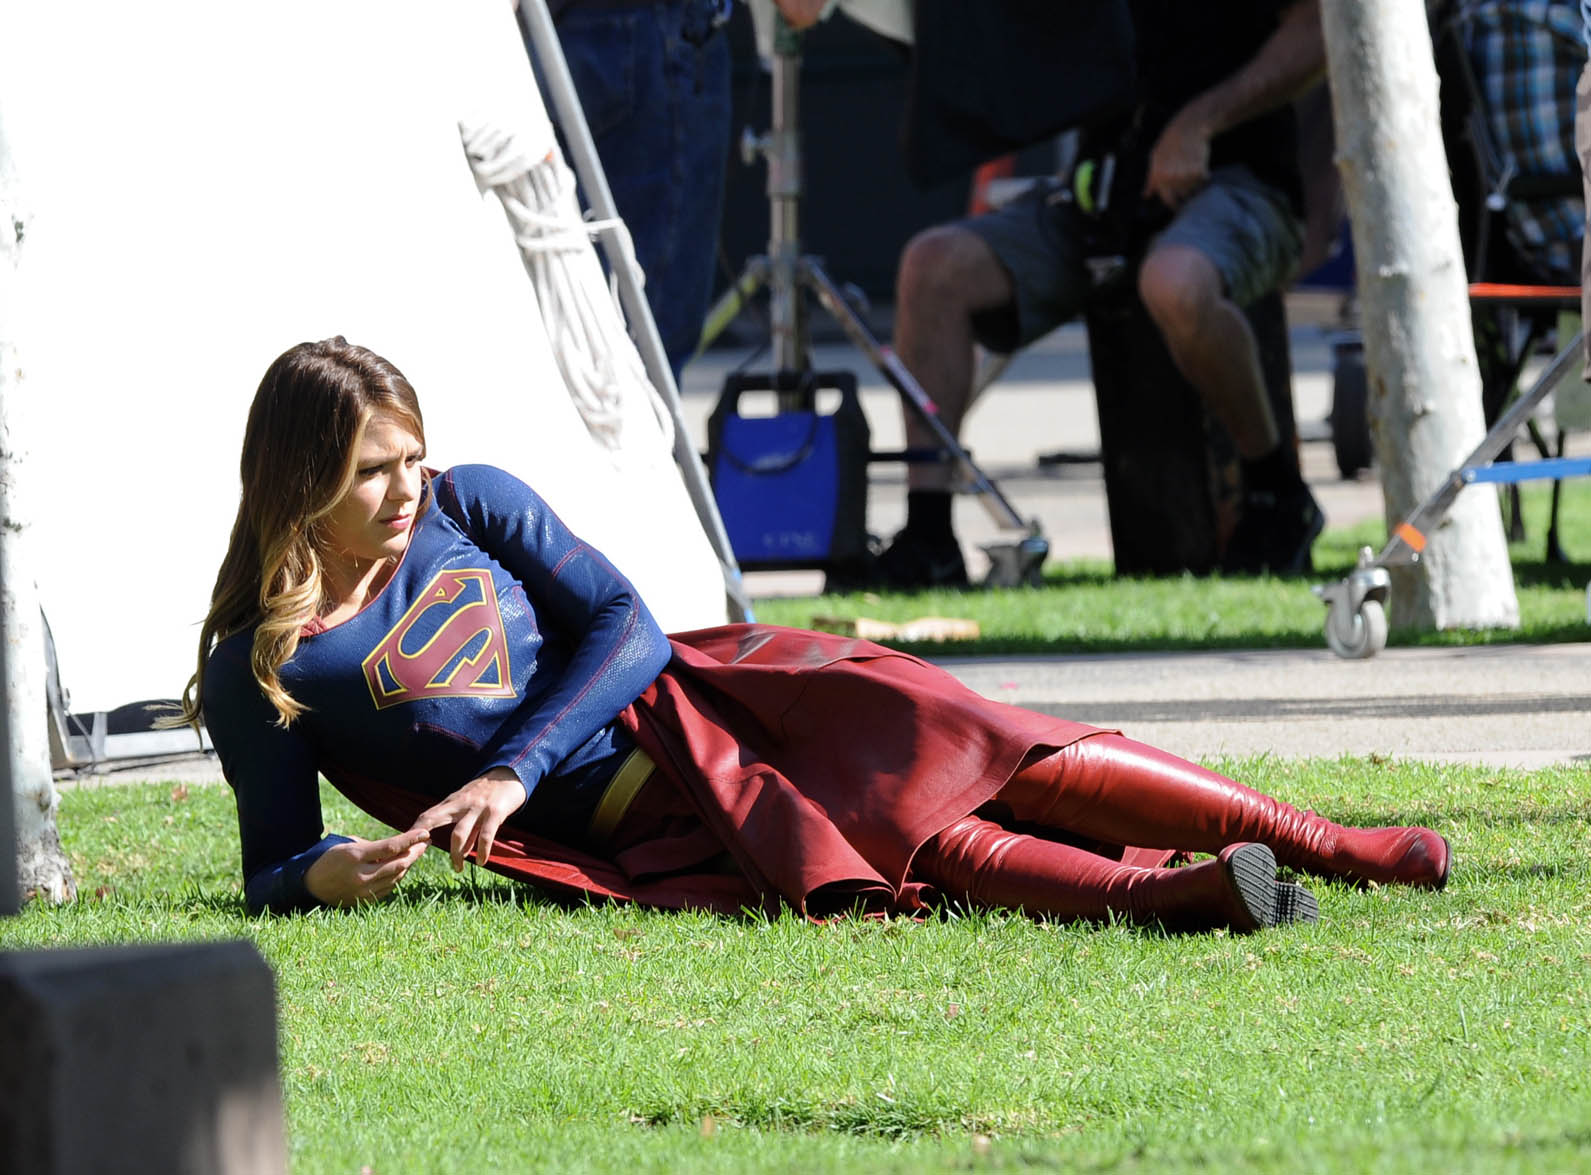 Melissa Benoist 2016 : Melissa Benoist on the set of Supergirl -13. 